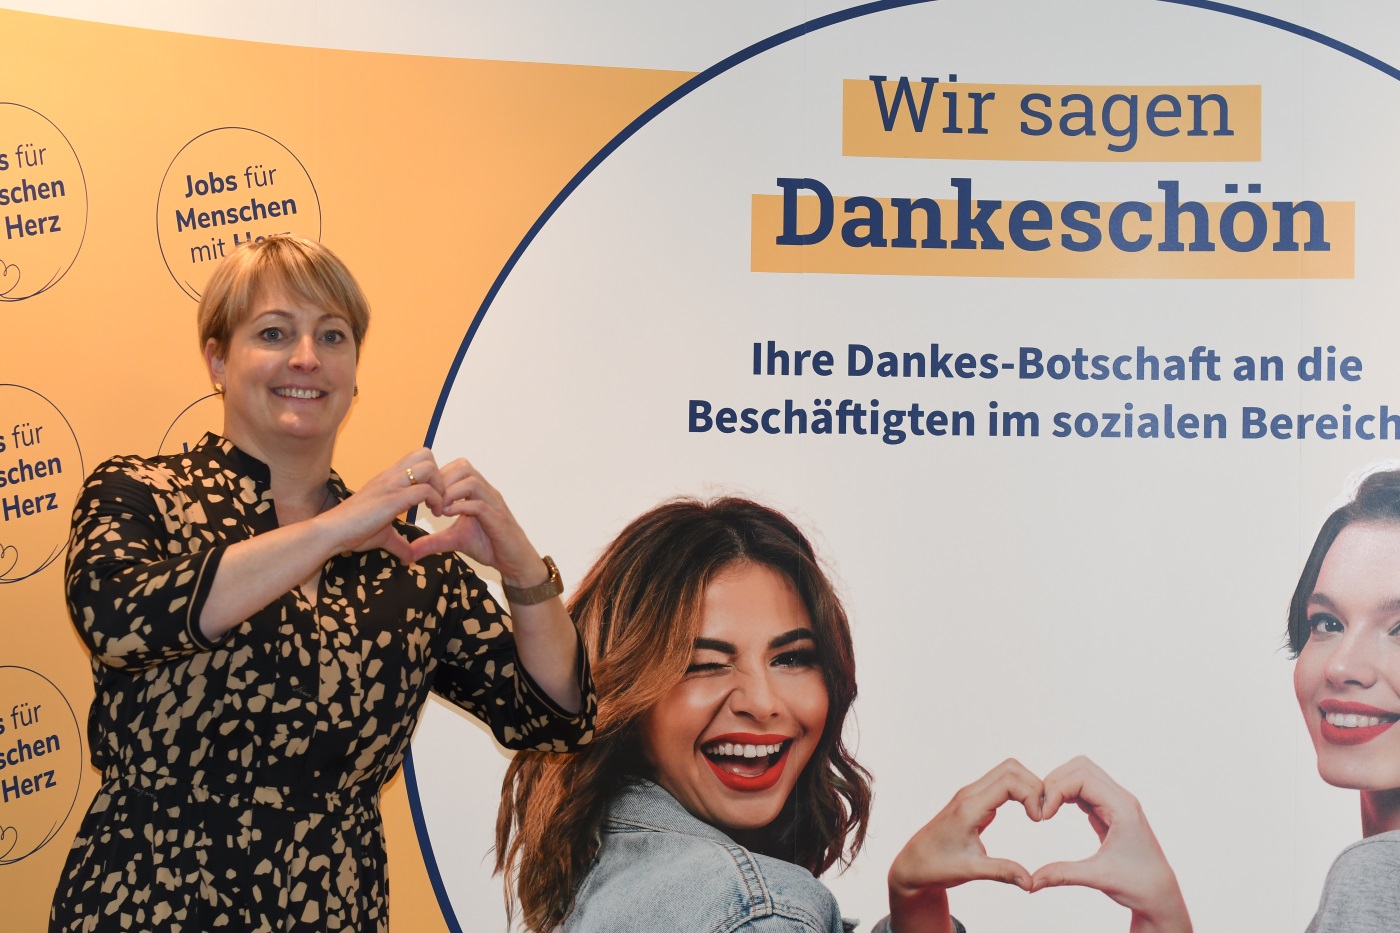 GRN-Geschäftsführerin Judith Masuch sagt bei der Auftaktveranstaltung der Aktion des Rhein-Neckar-Kreises "Soziale Berufe"/Jobs für Menschen mit Herz danke